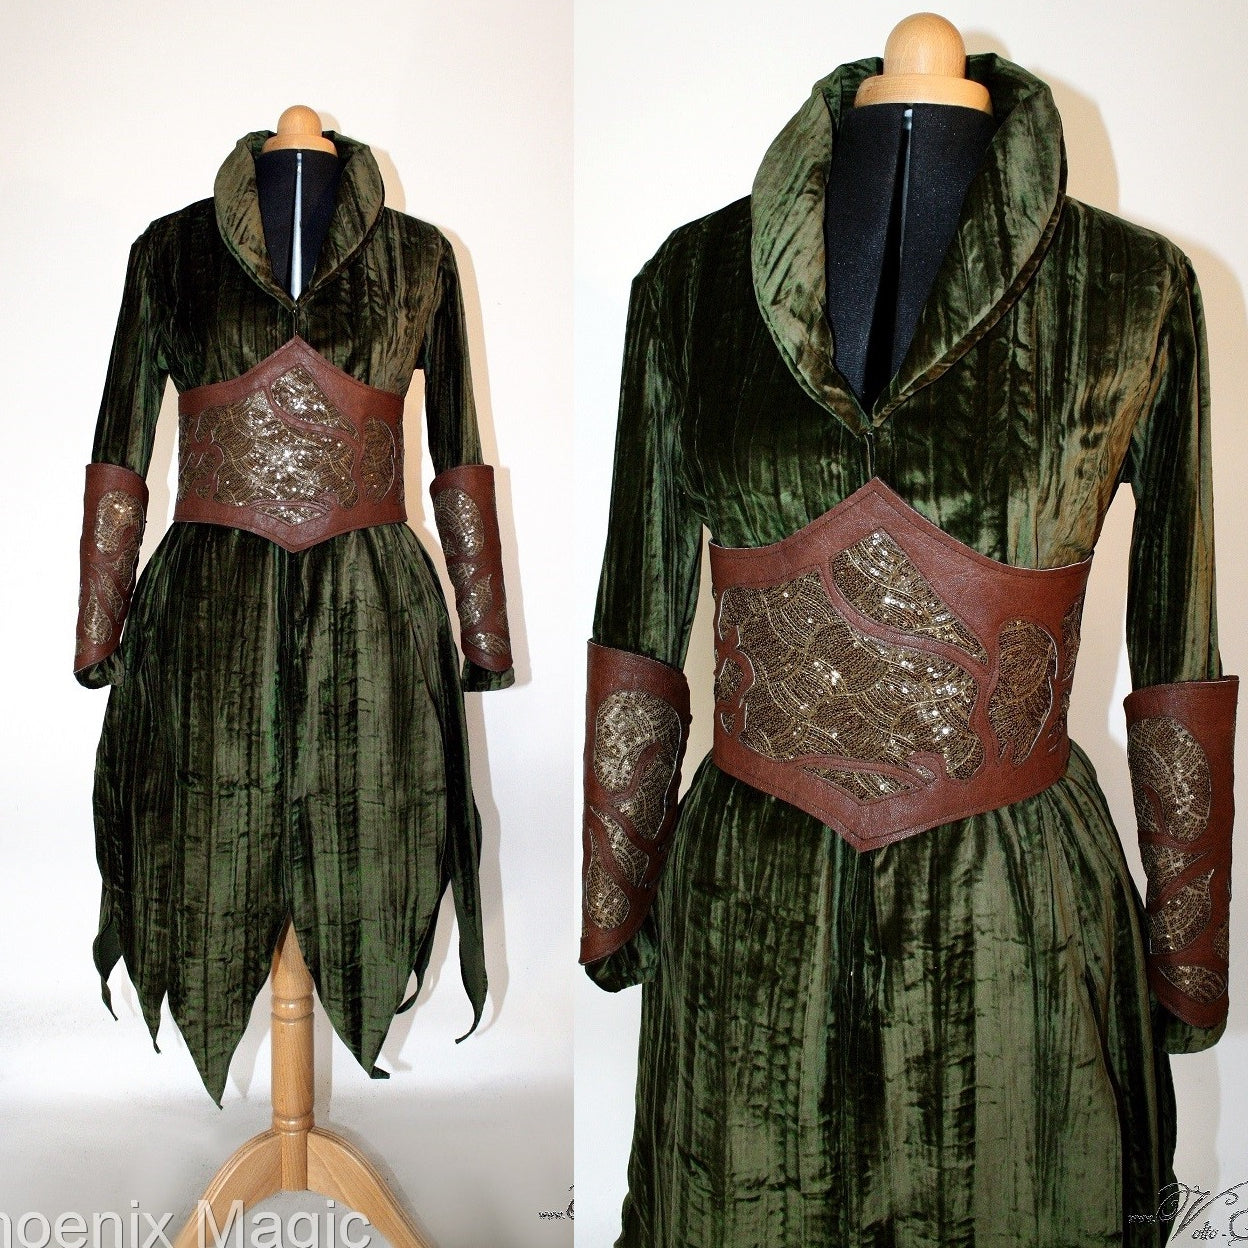 Der Hobbit Tauriel Kostüm mit Kleid, Gürtel und Armschienen Herr der Ringe Elben Cosplay Kostüm